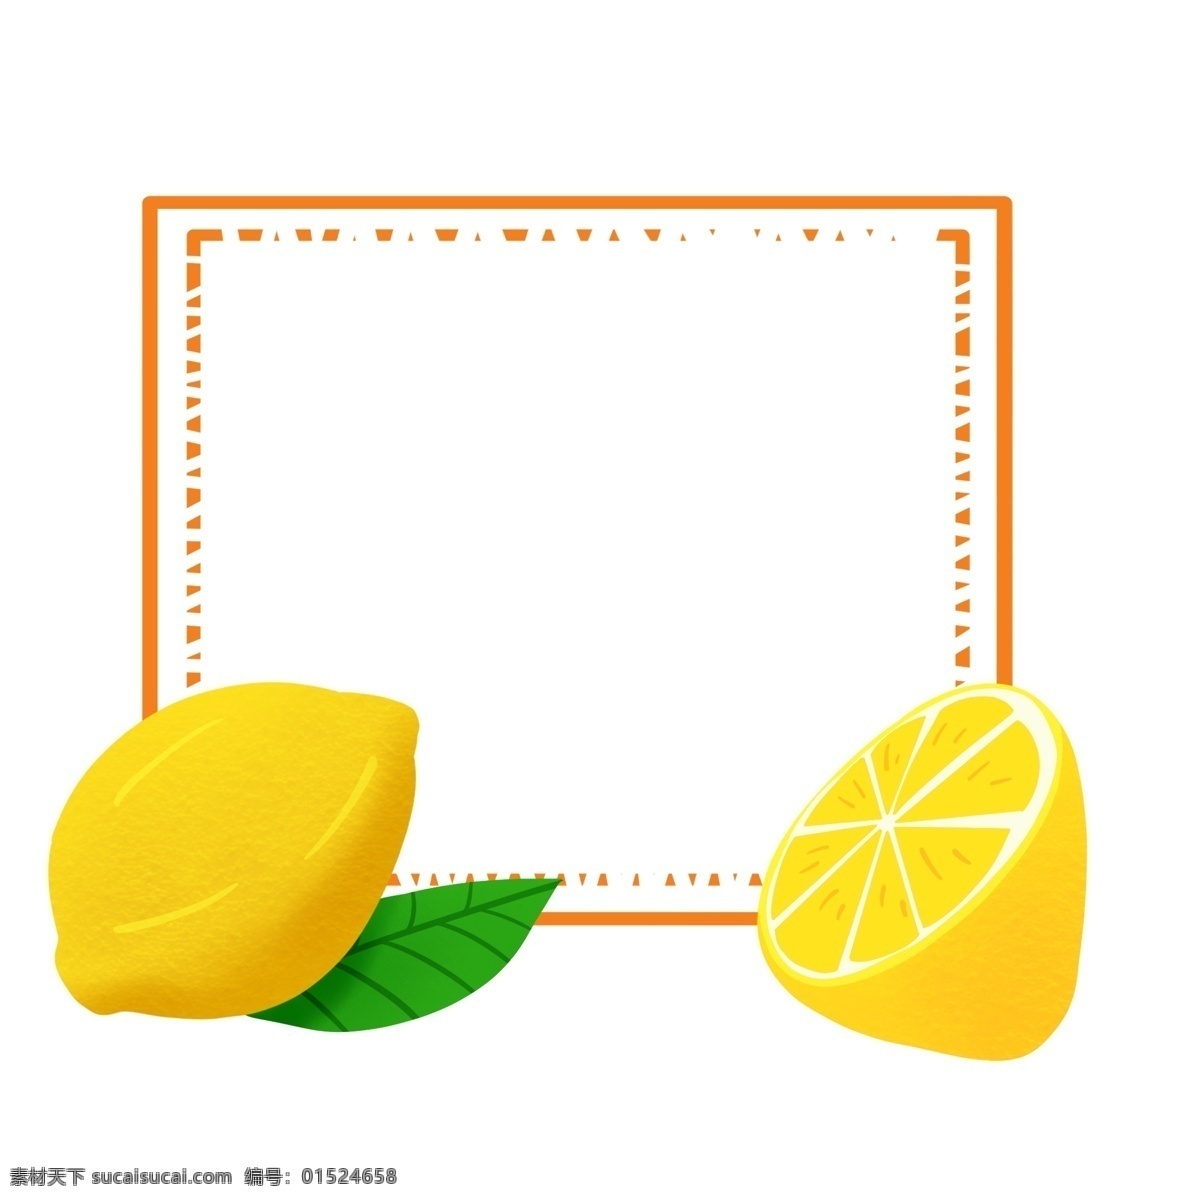 夏季 清新 柠檬 水果 边框 水果边框 方形边框 夏季边框